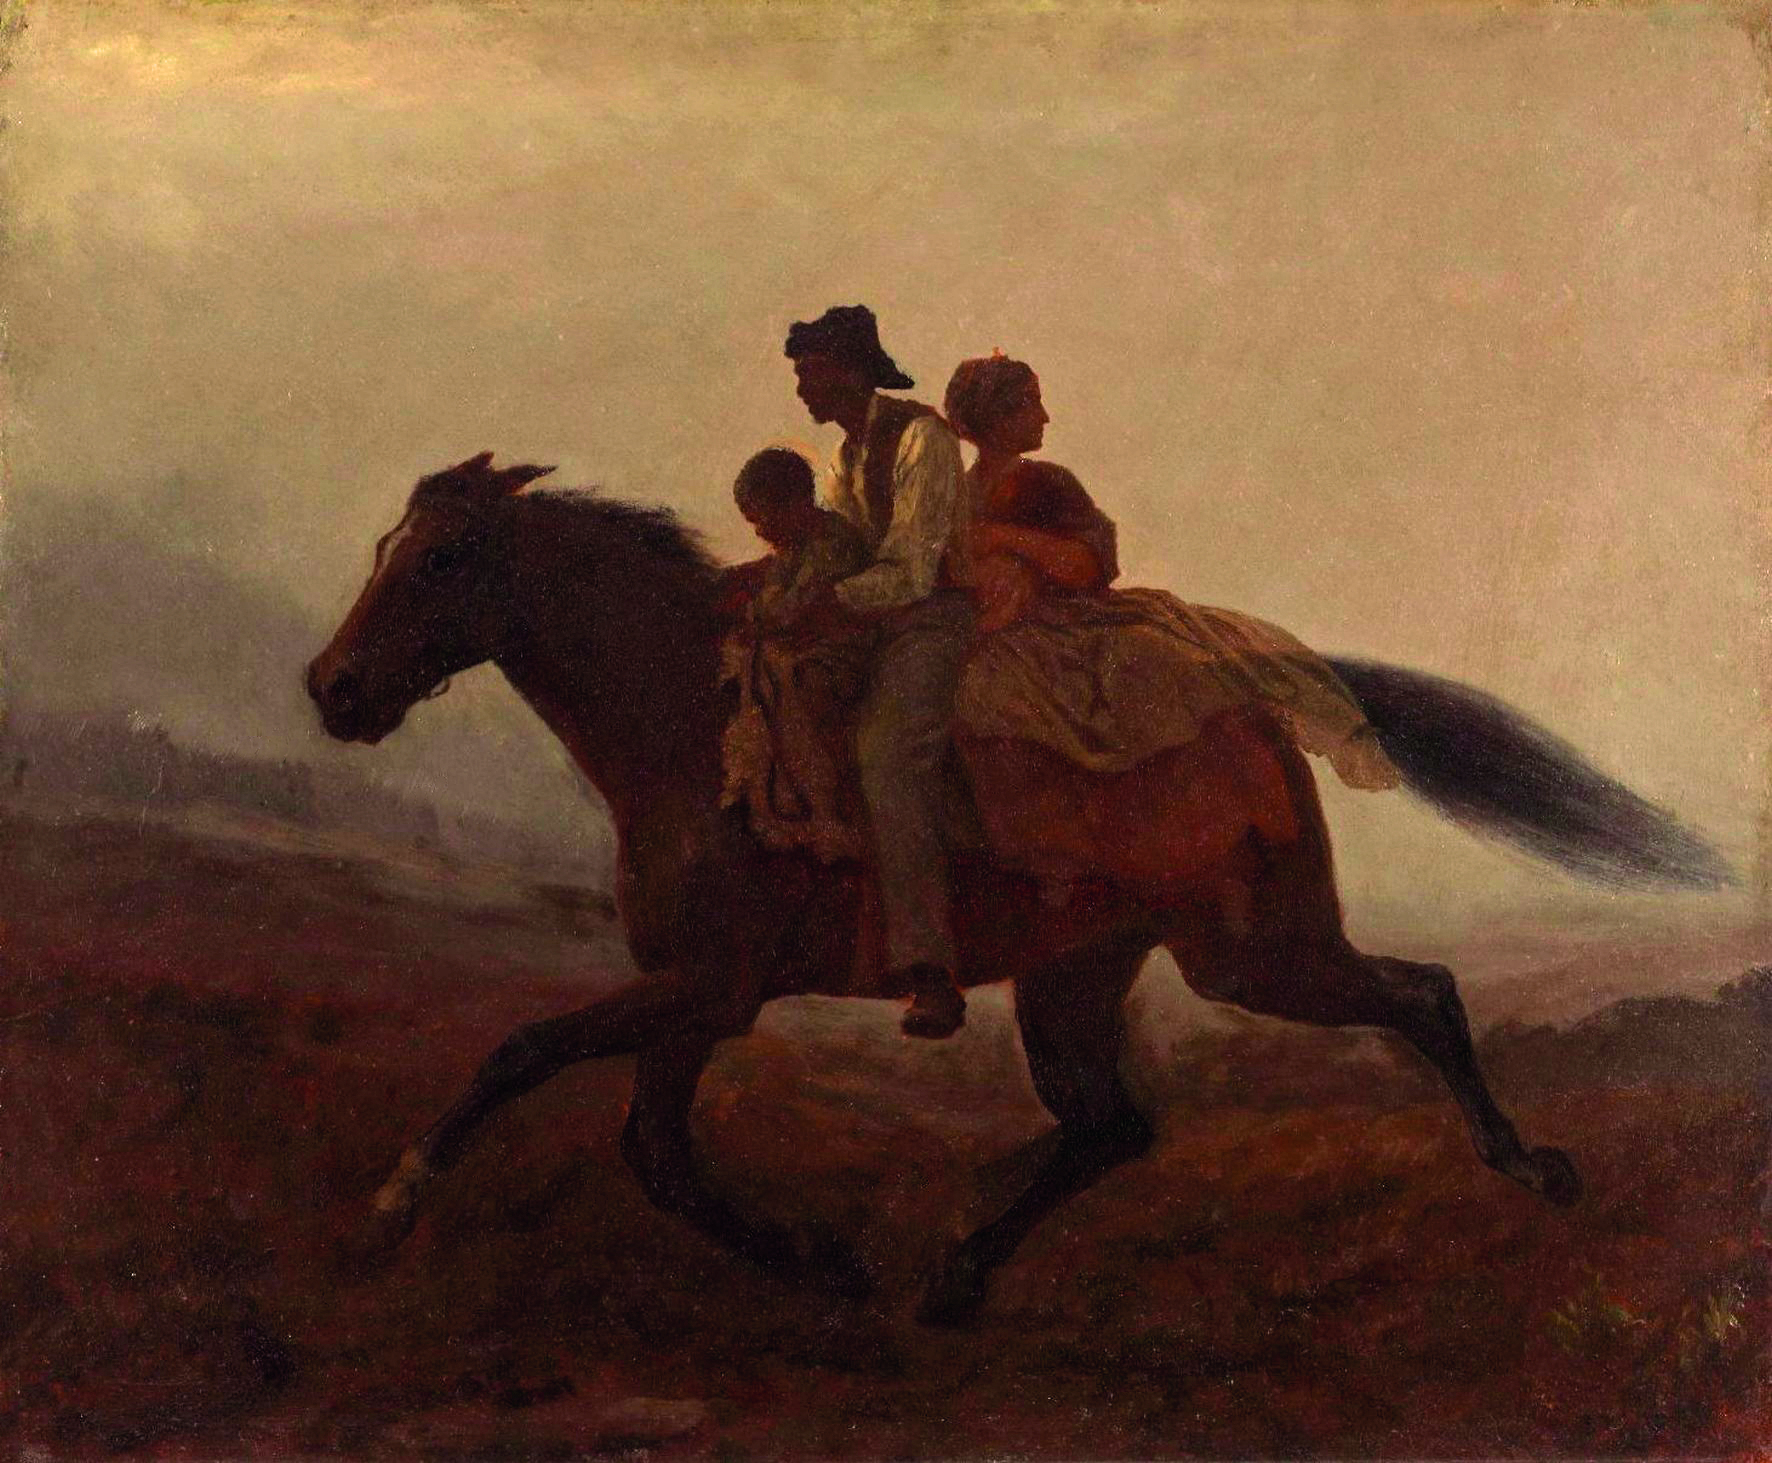 Pintura. Três pessoas, um homem, uma mulher e uma criança, todos montados em um cavalo de pelagem marrom, em um campo gramado com o céu enevoado.